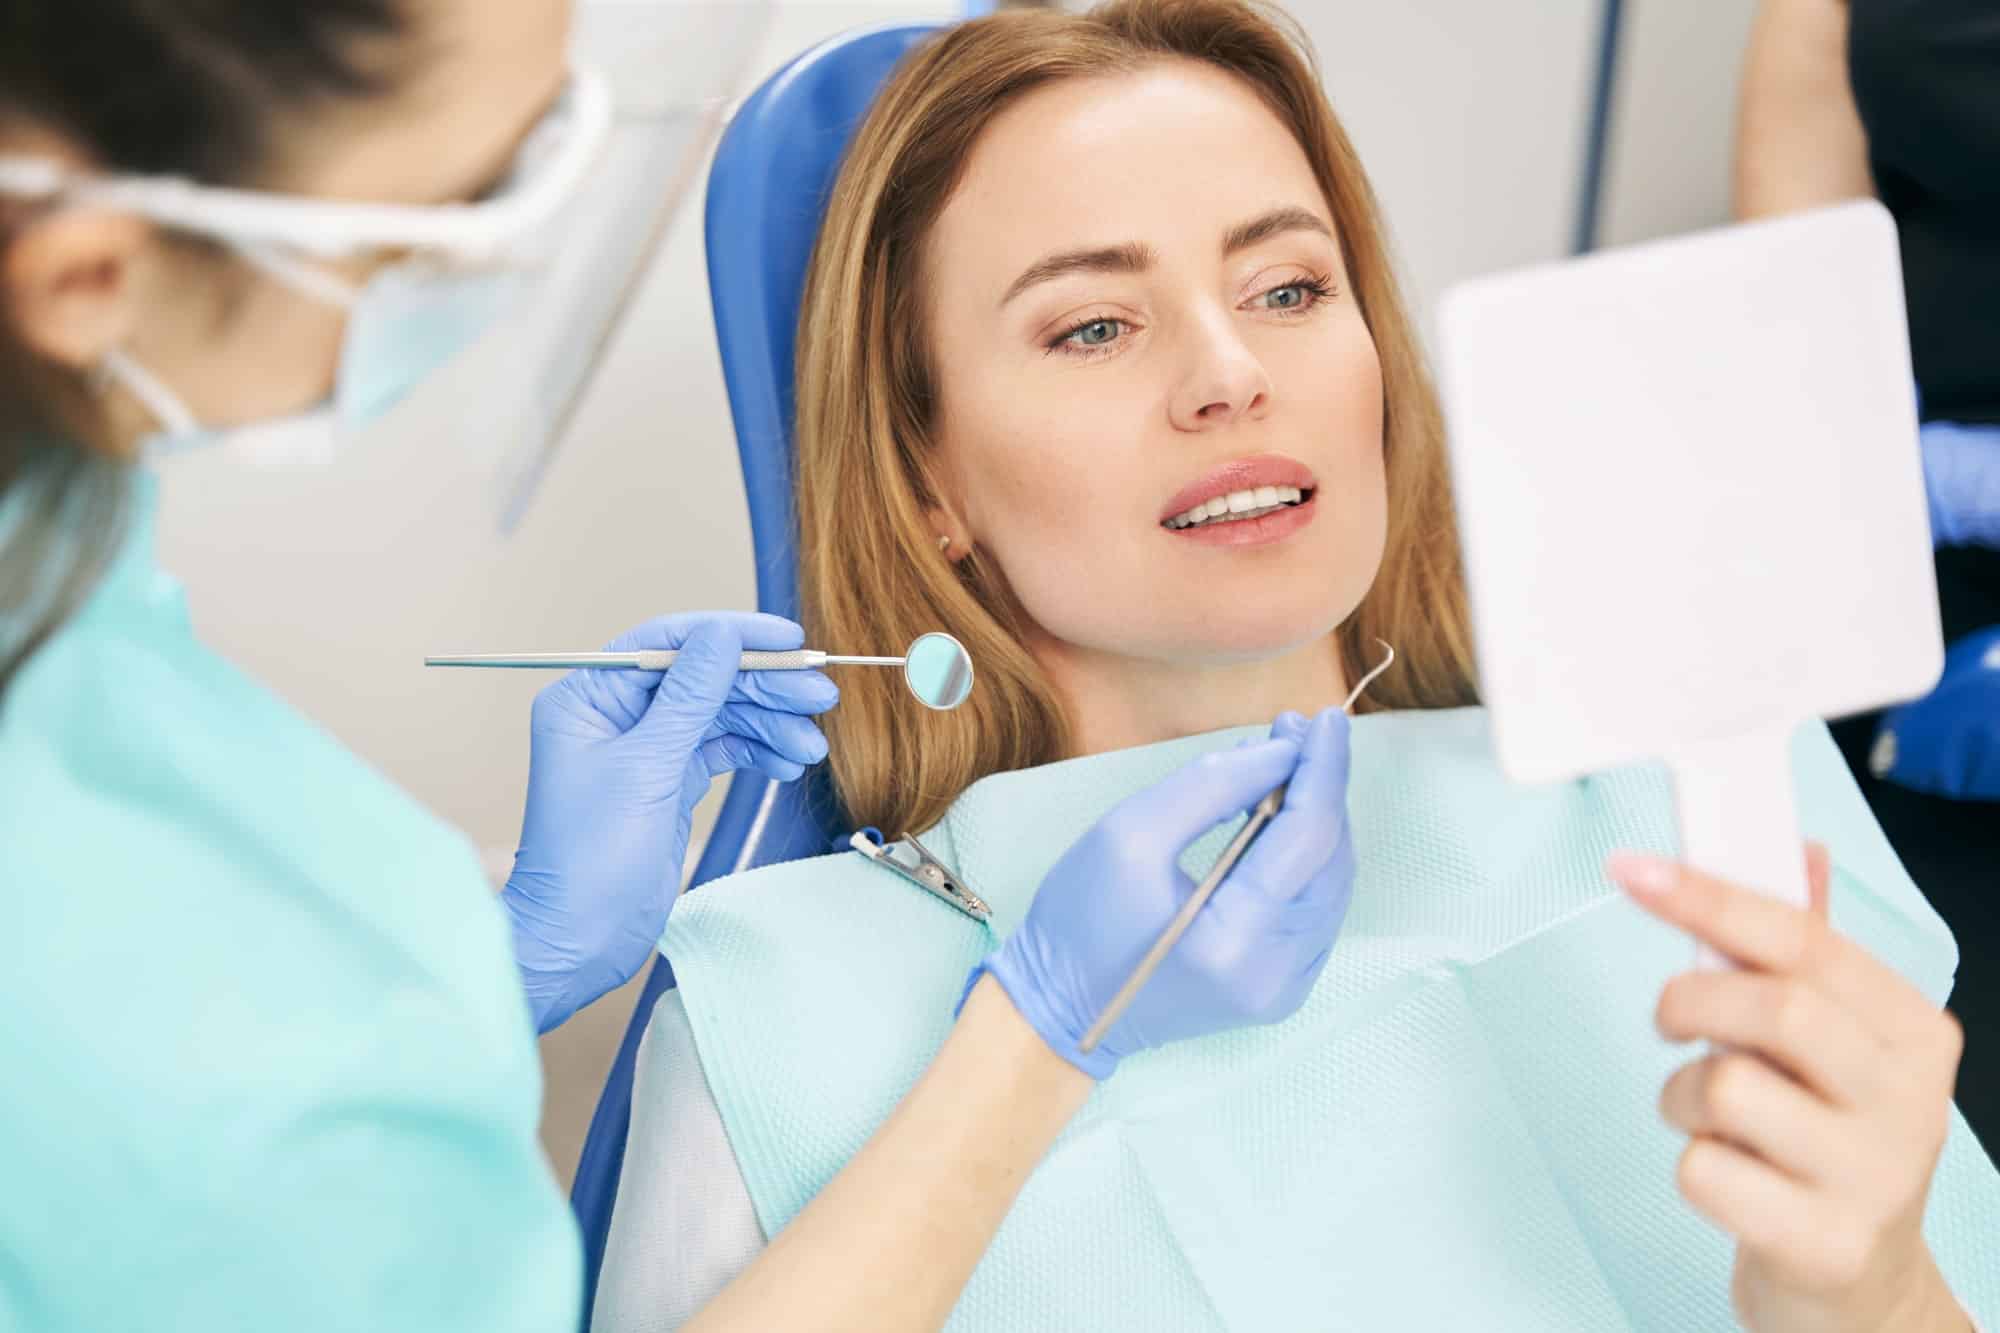 Comment une clinique dentaire choisit-elle son personnel ?